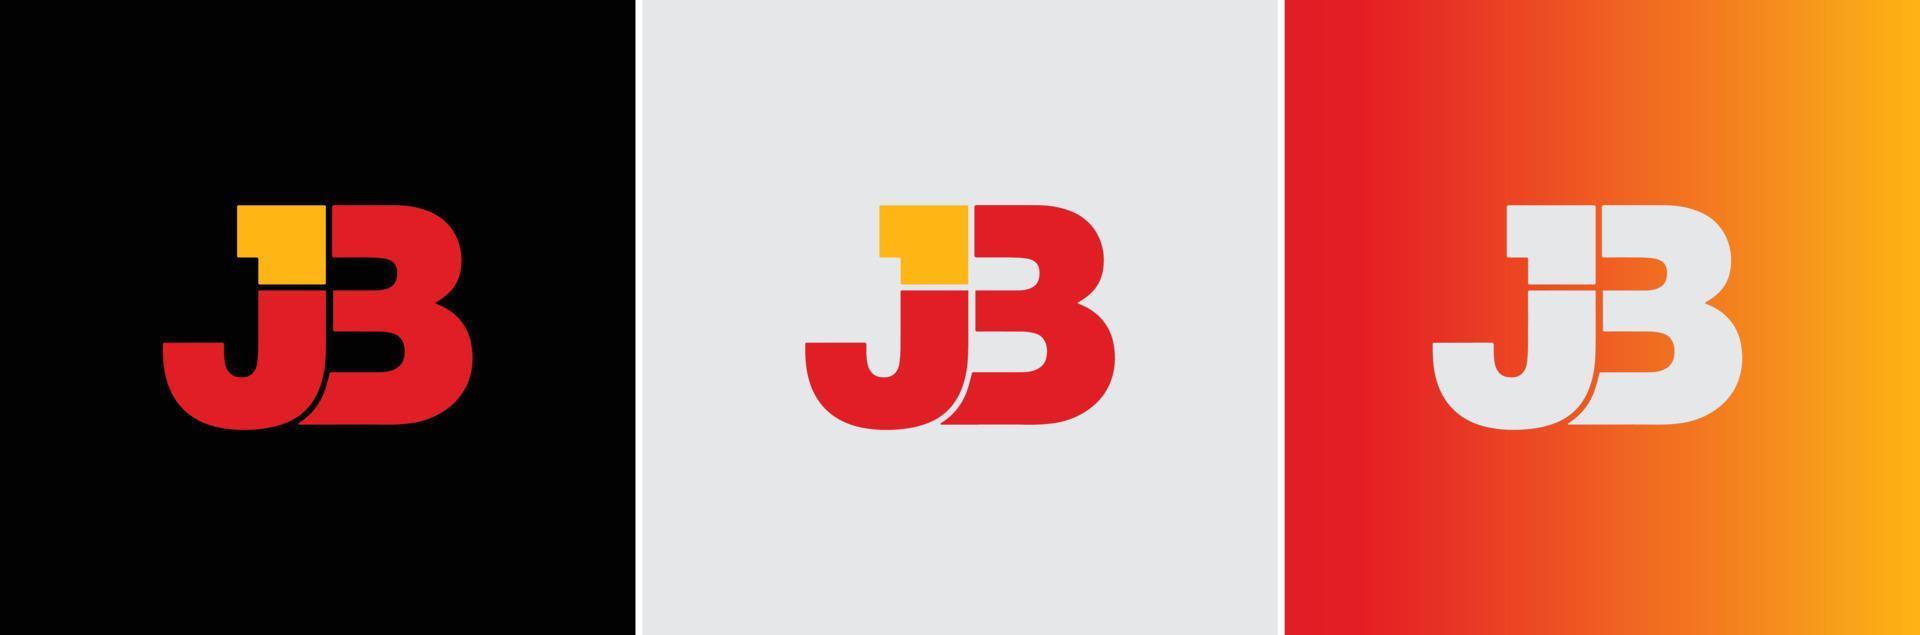 jb j3 logo creative modern minimalalphabet jb första bokstavsmärke monogram redigerbart i vektorformat vektor